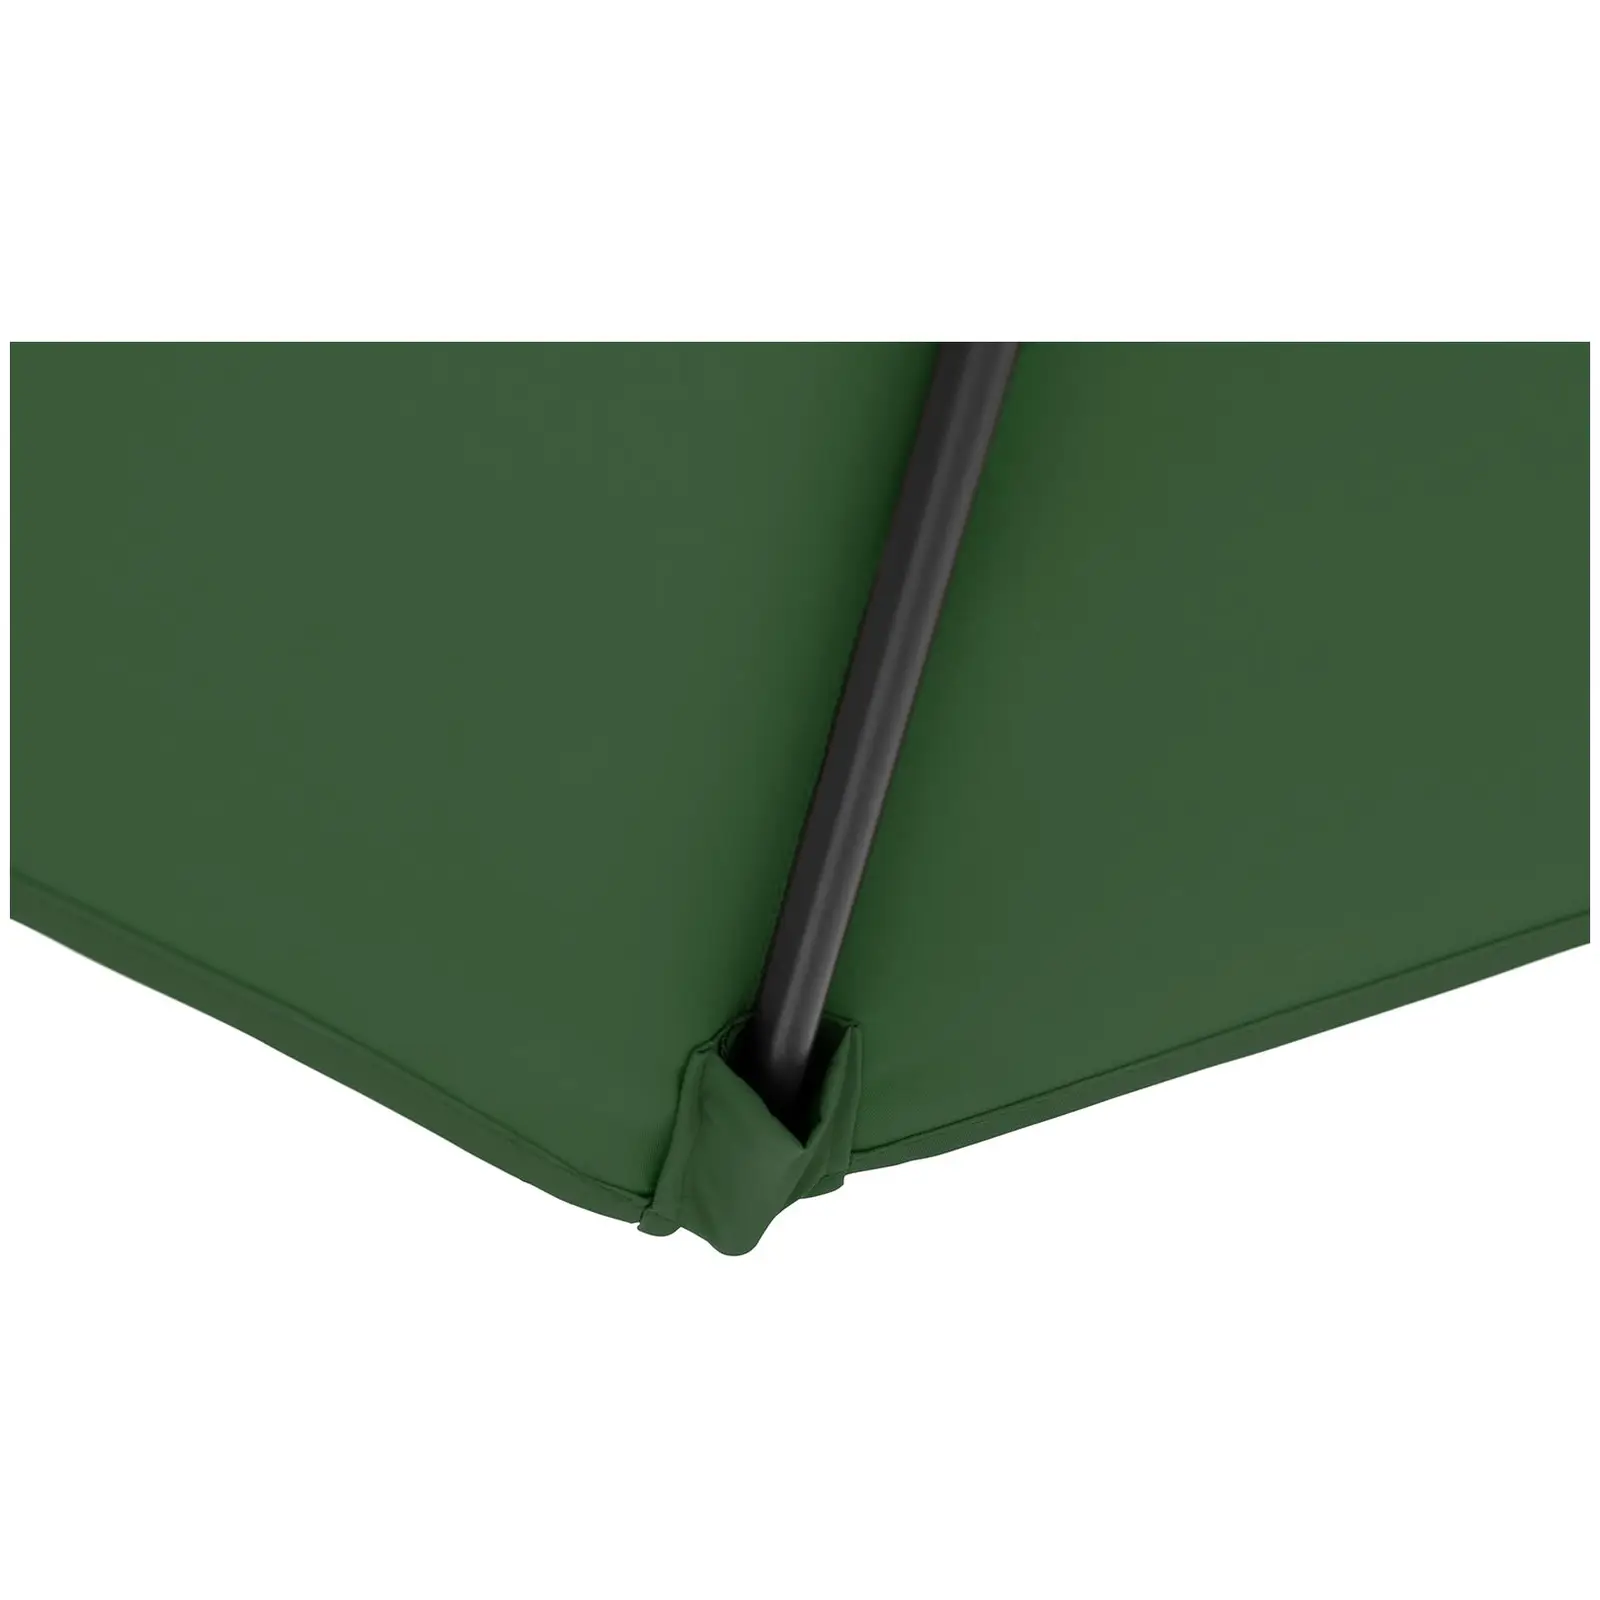 Sonnenschirm groß - grün - sechseckig - Ø 300 cm - neigbar